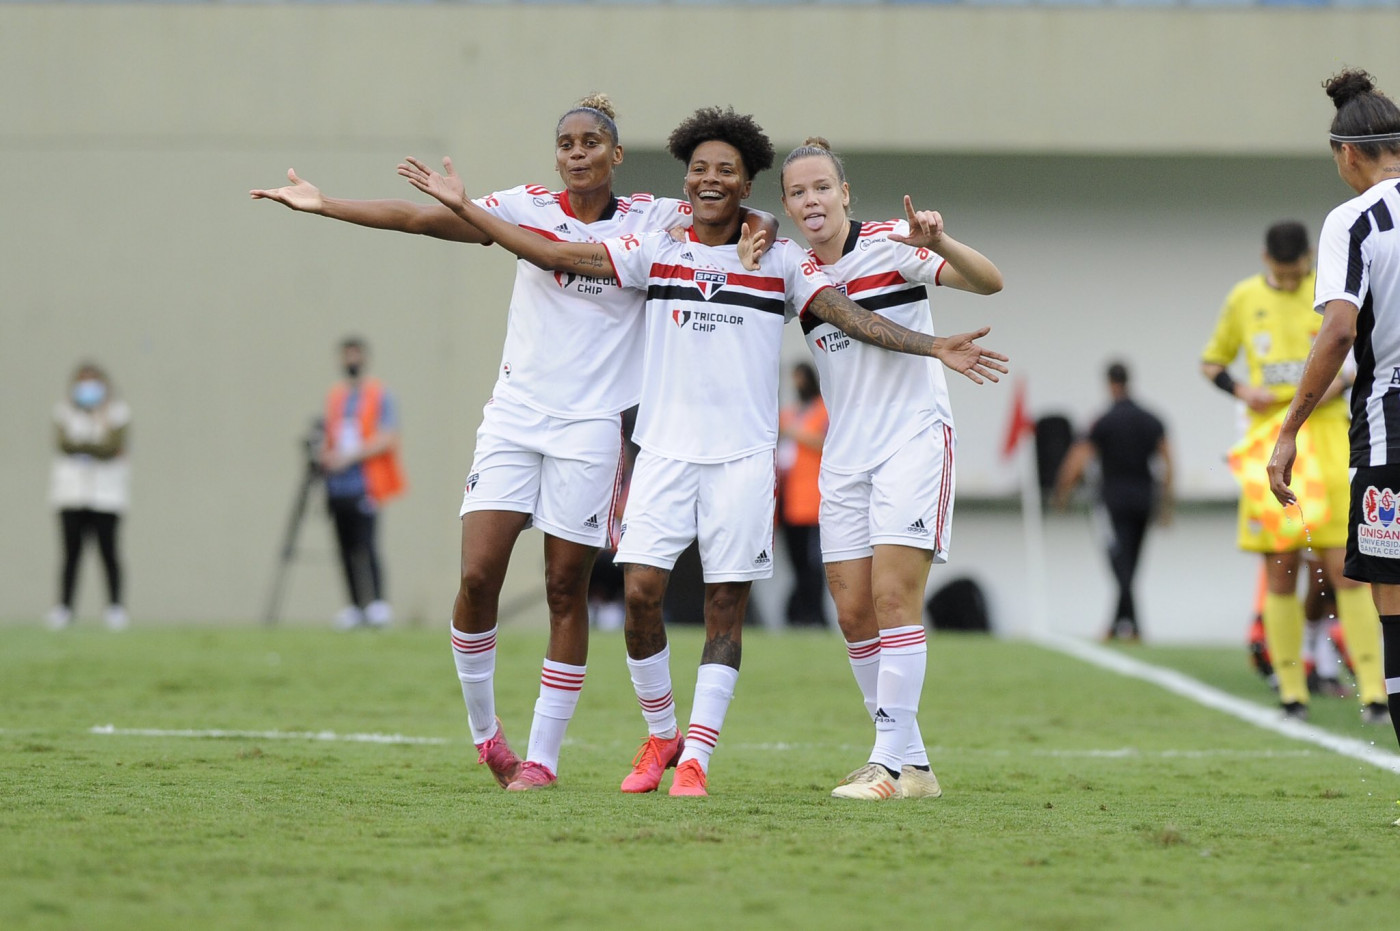 Saiba o valor da premiação do Corinthians pelo título do Campeonato Paulista  Feminino